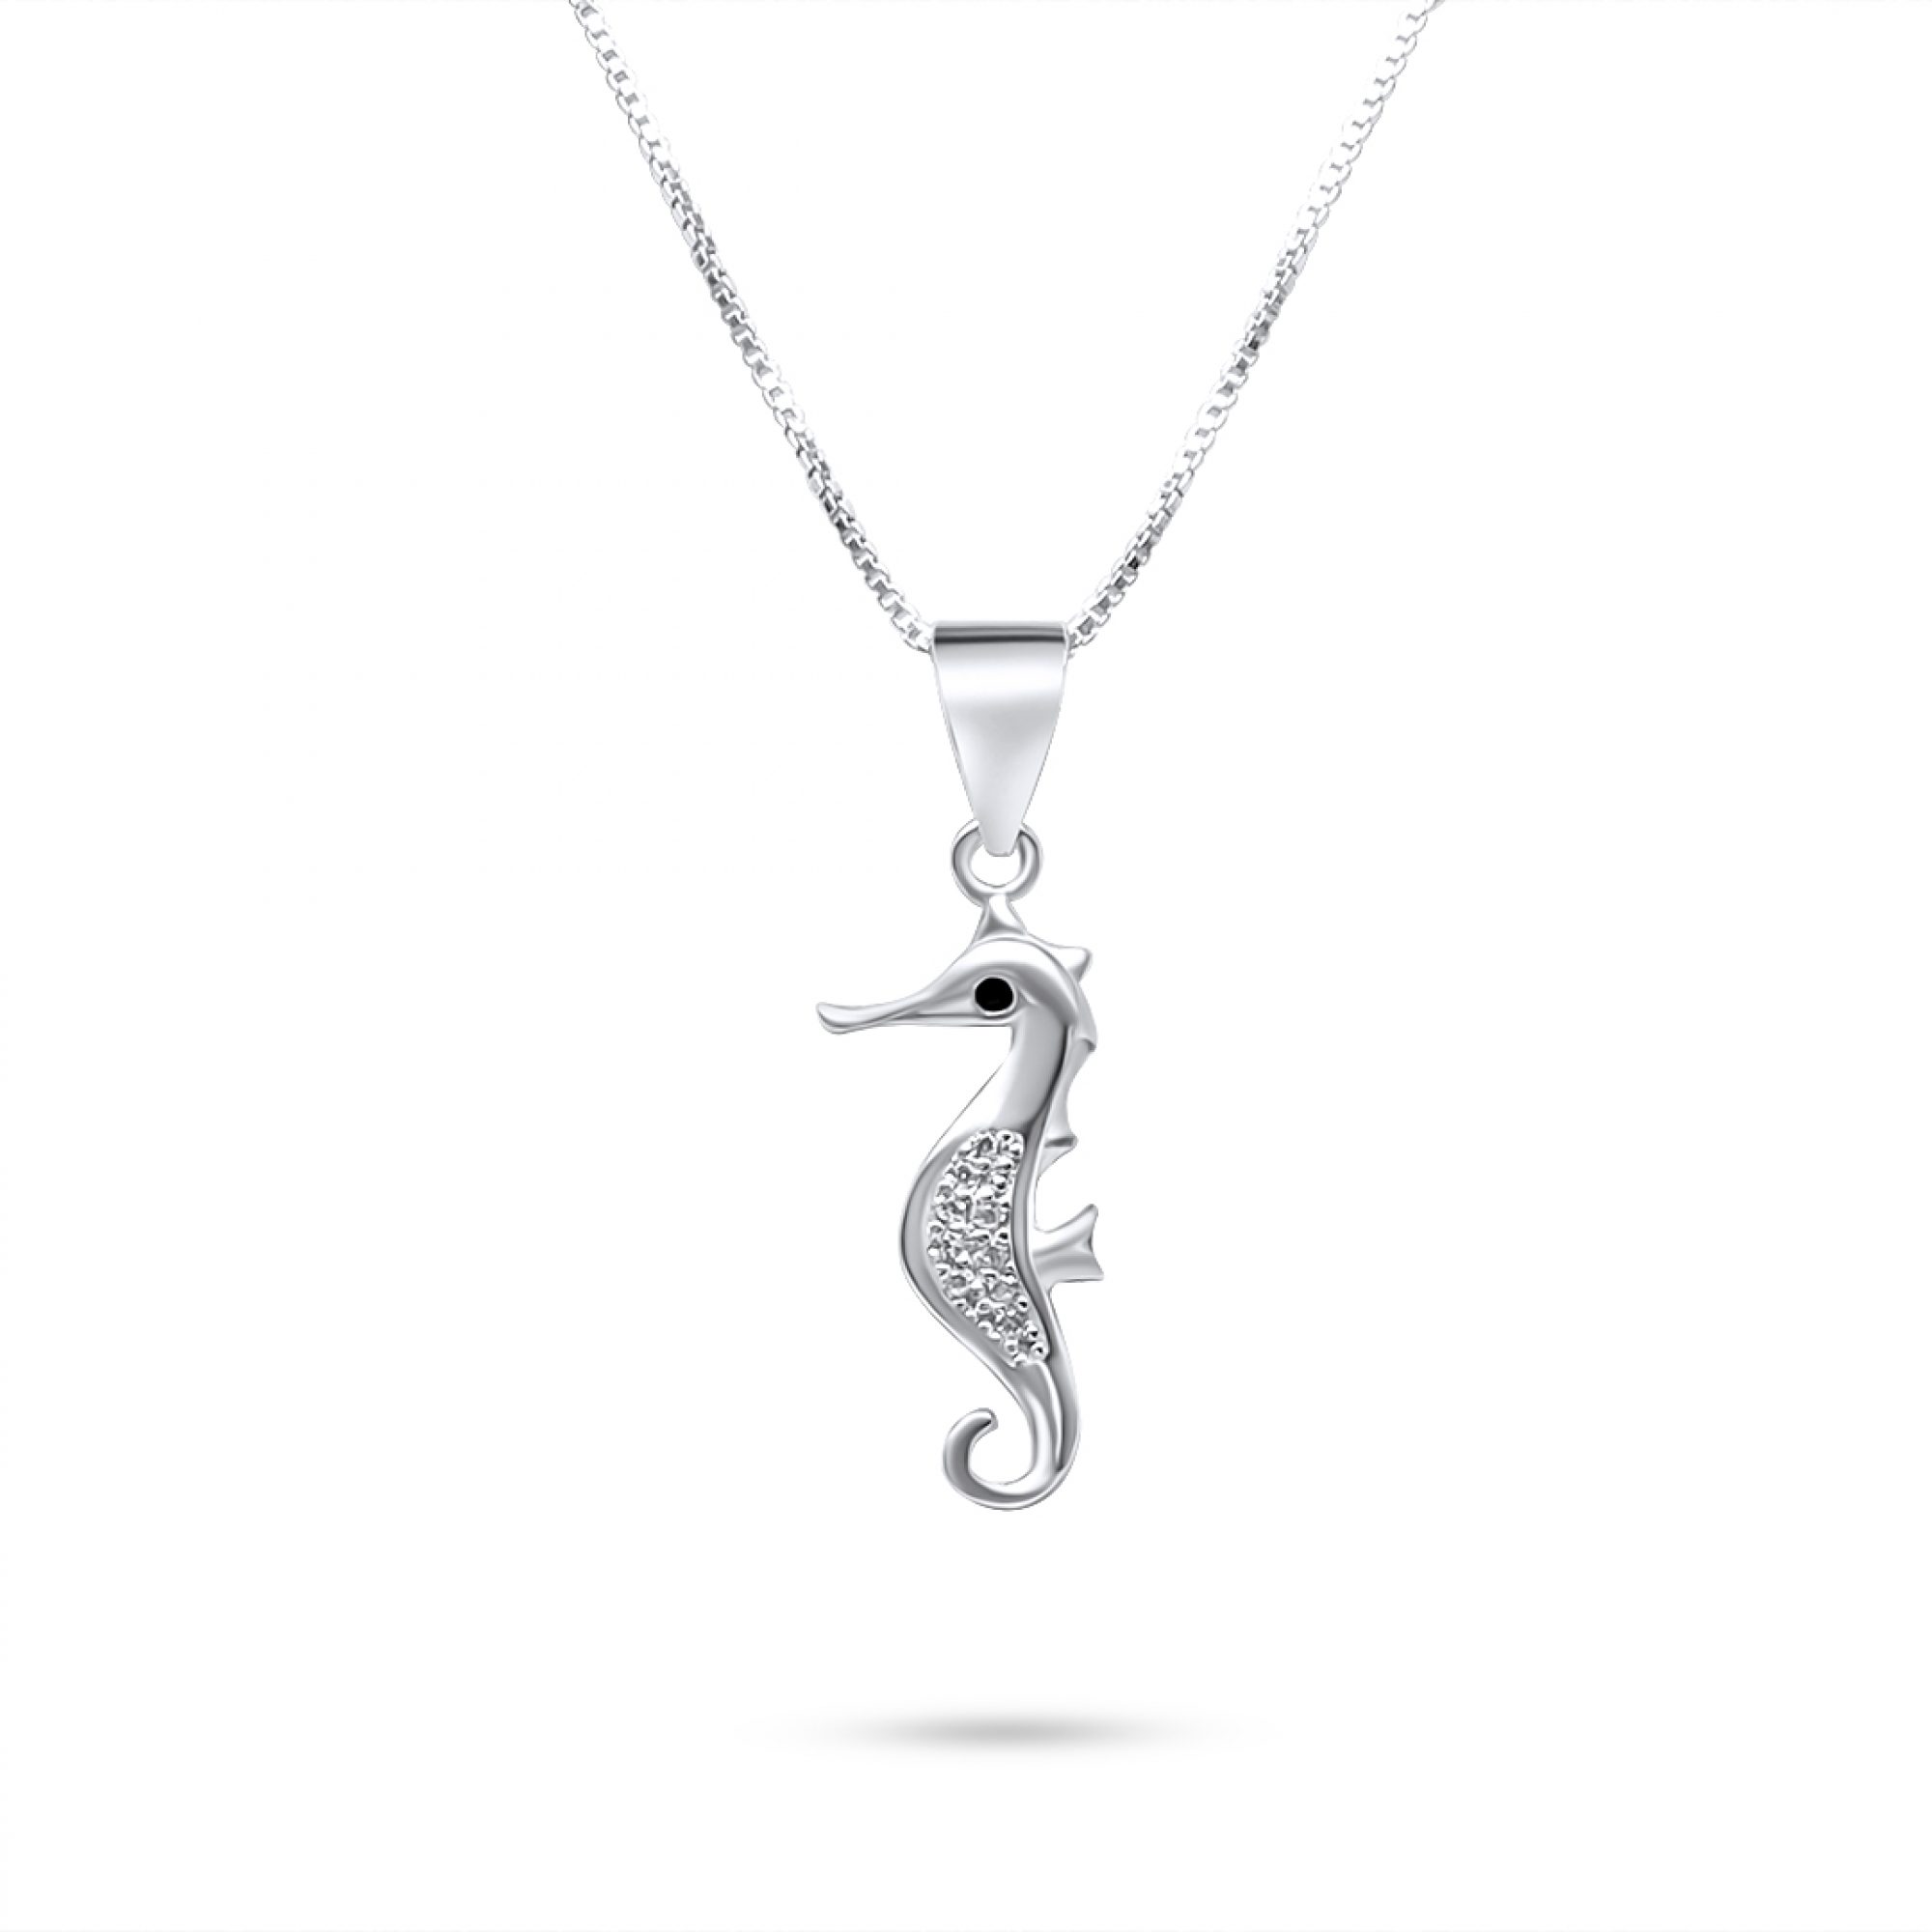 Seahorse necklace with zircon stones